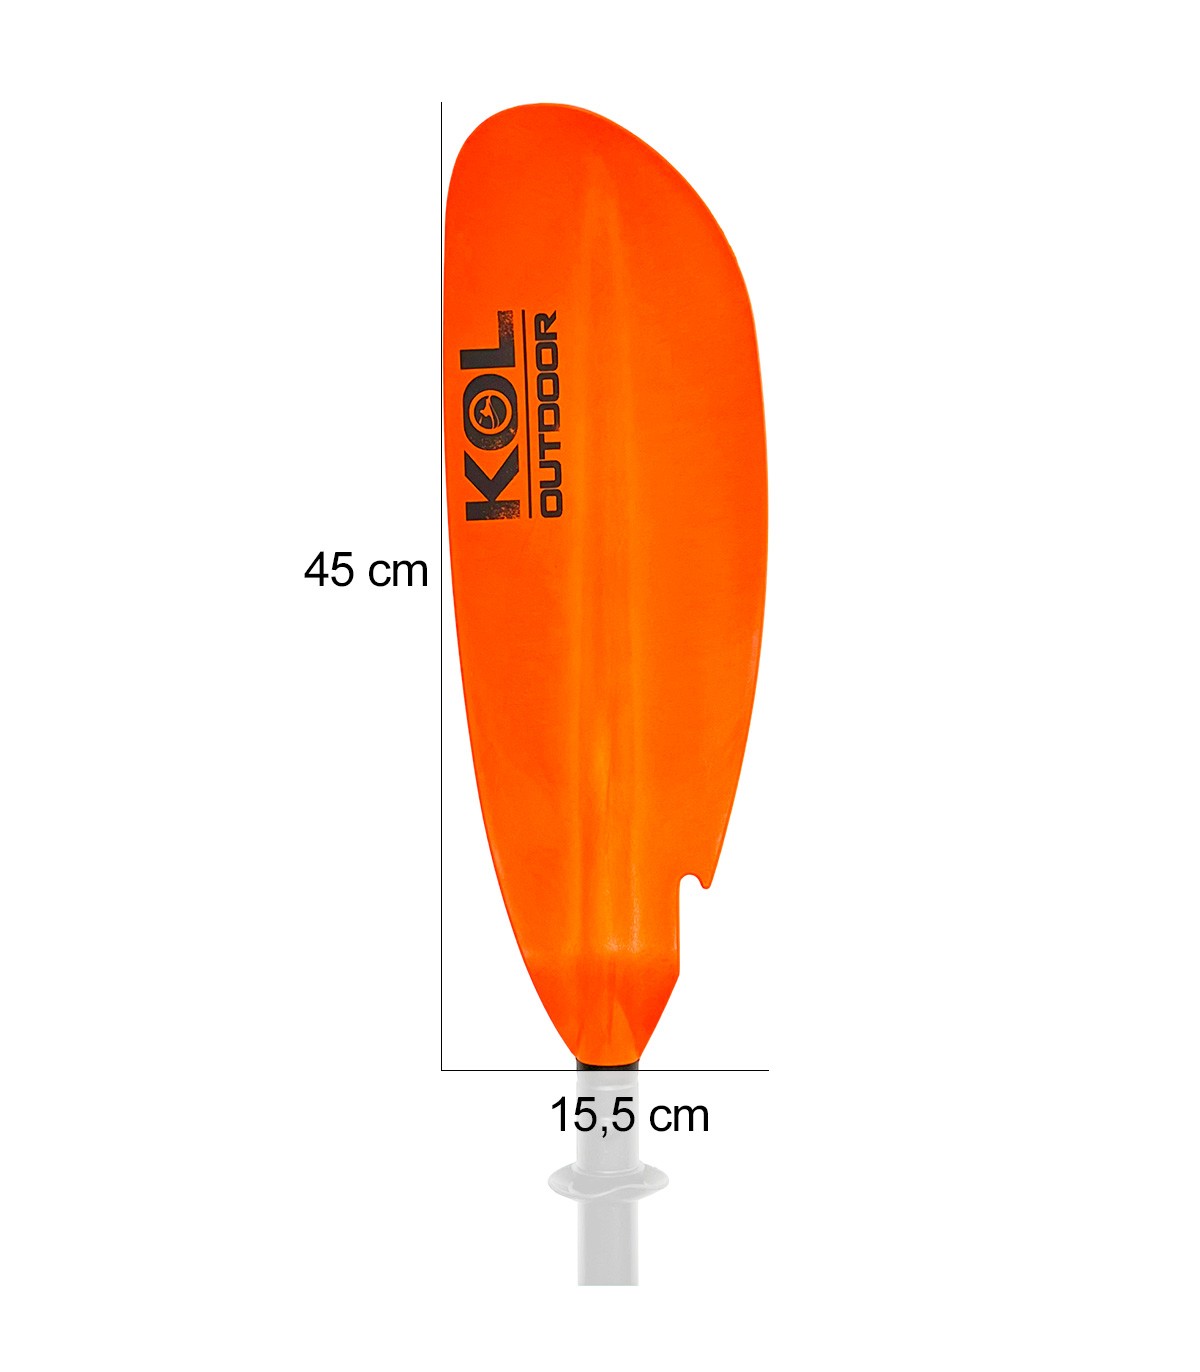 Remo Kayak Desmontable Kol Outdoor De Aluminio 2 Piezas